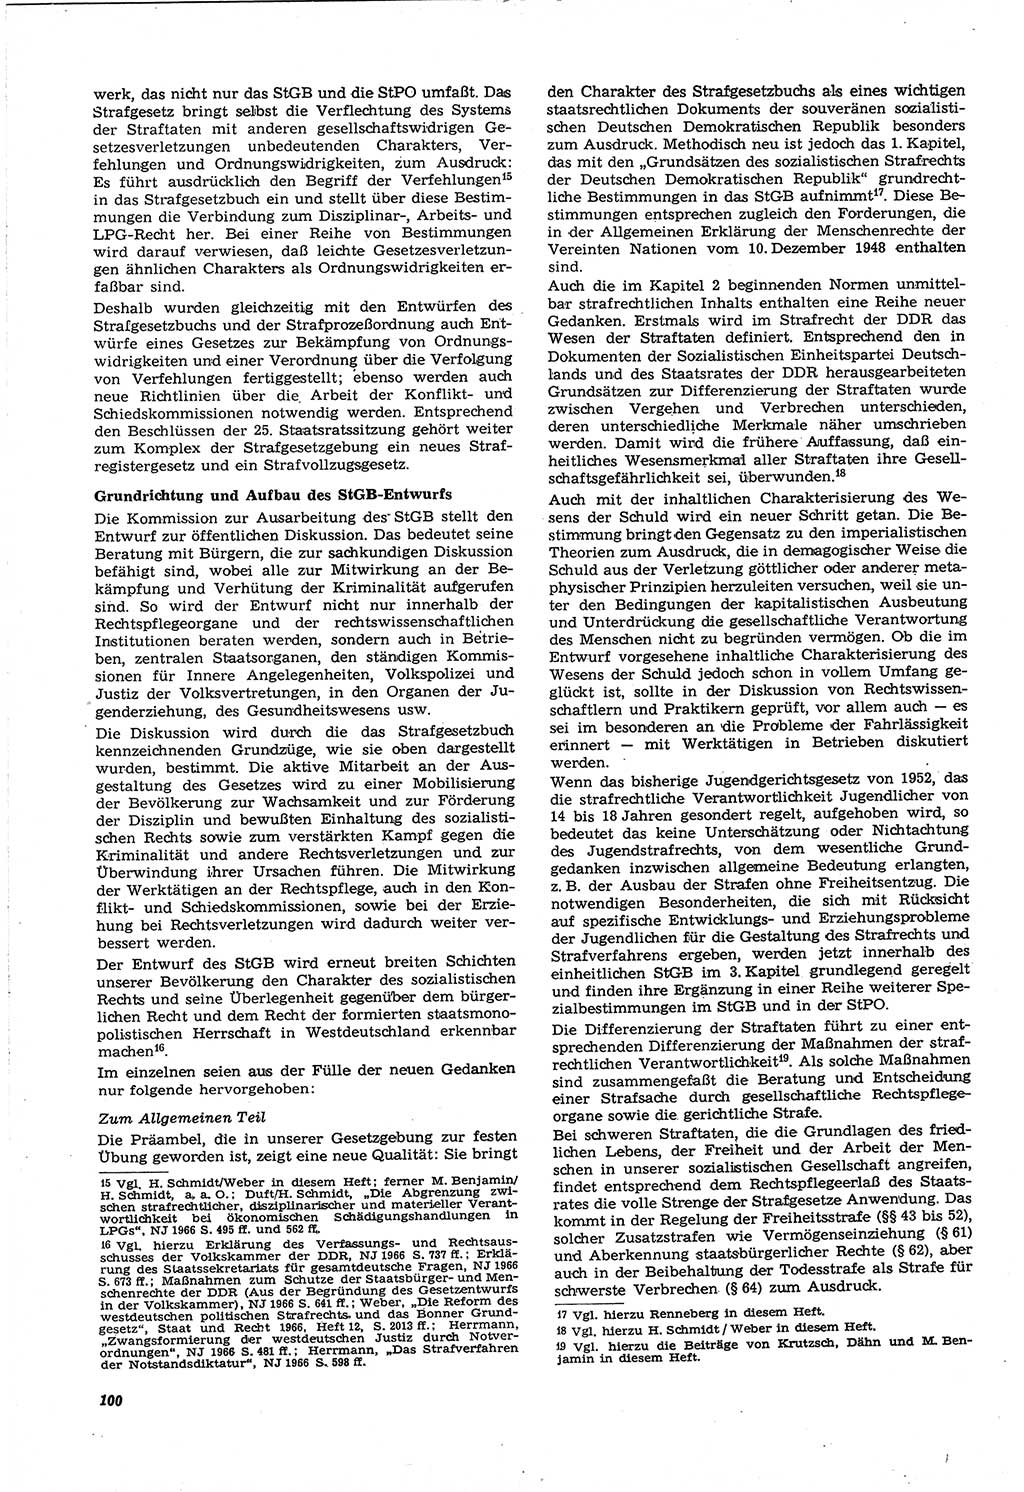 Neue Justiz (NJ), Zeitschrift für Recht und Rechtswissenschaft [Deutsche Demokratische Republik (DDR)], 21. Jahrgang 1967, Seite 100 (NJ DDR 1967, S. 100)